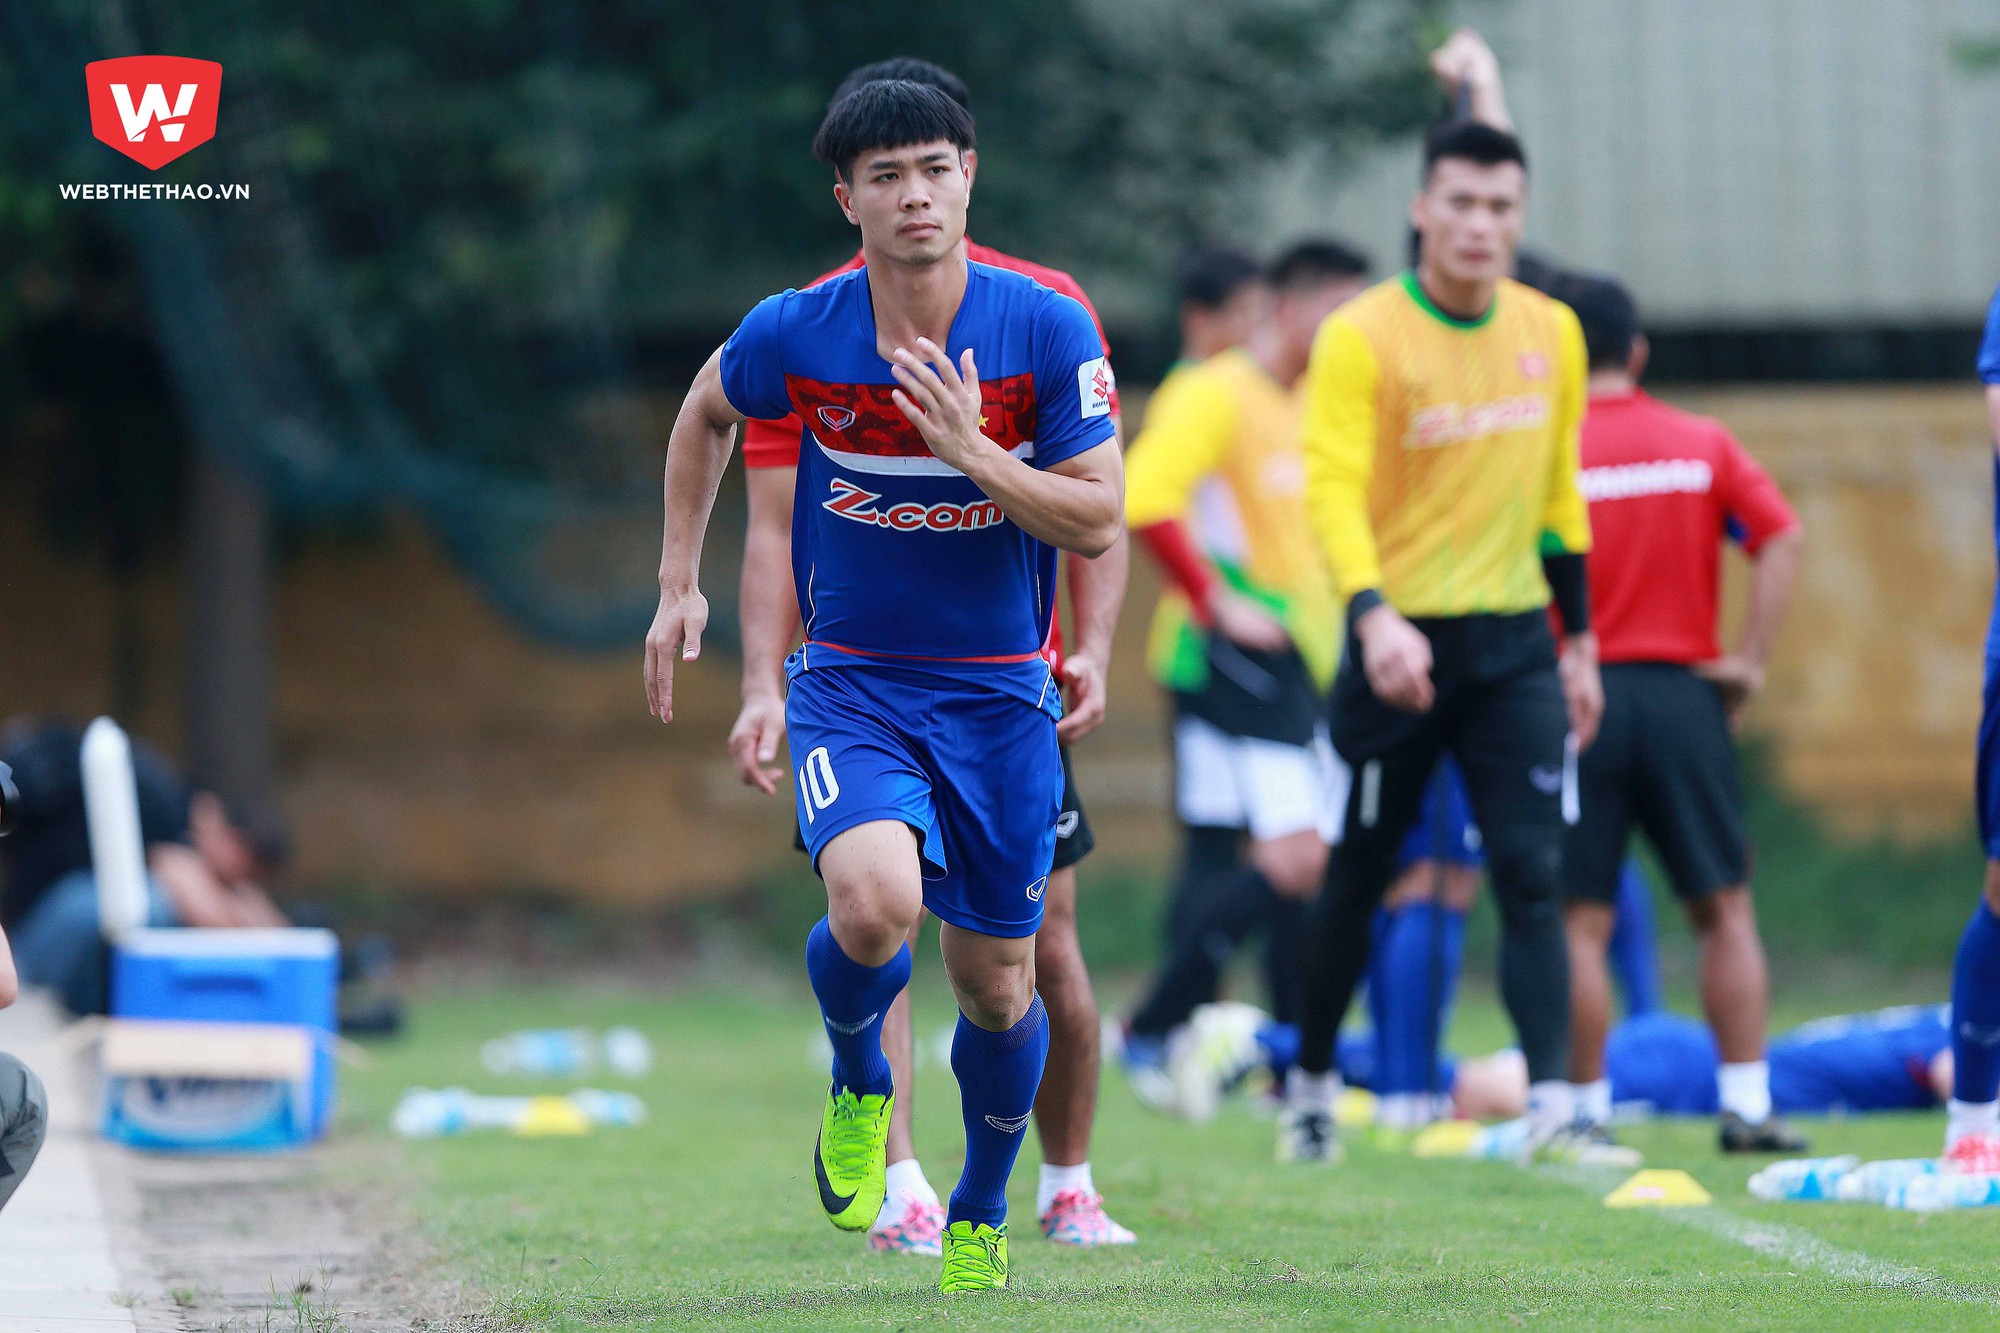 U23 Việt Nam sẽ có hơn 1 tháng chuẩn bị cho VCK U23 châu Á 2018. Ảnh: Hải Đăng.